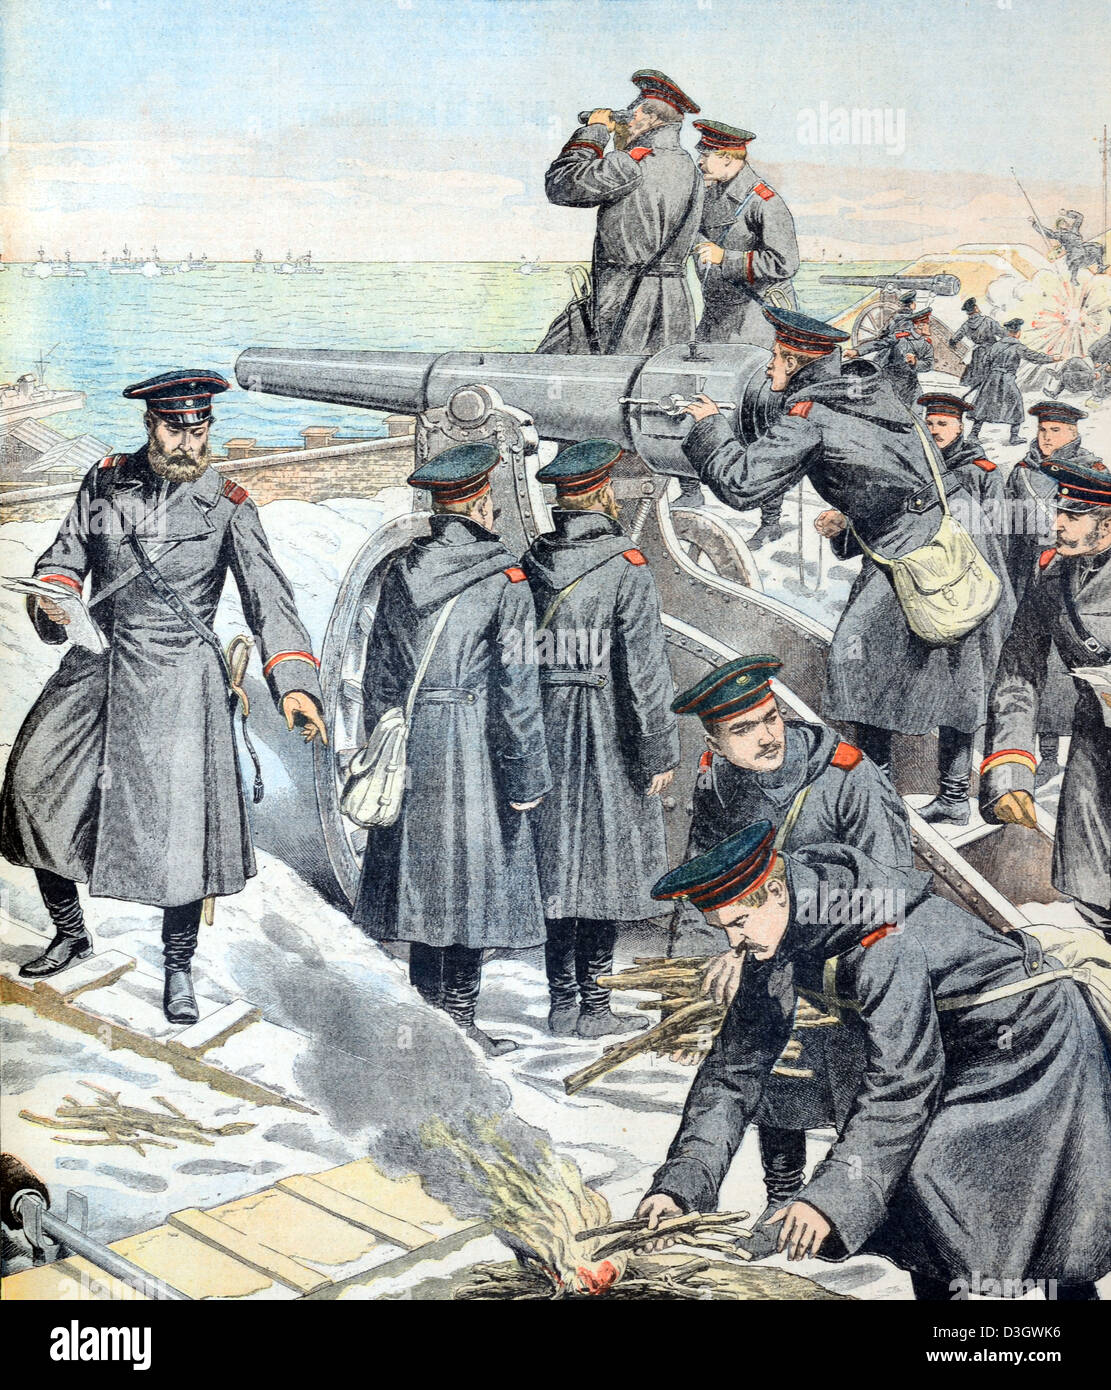 Belagerung und Schlacht von Port Arthur oder Ryojun China während des Russisch-Japanischen Krieges (1904) Vintage Illustration oder Gravur Stockfoto